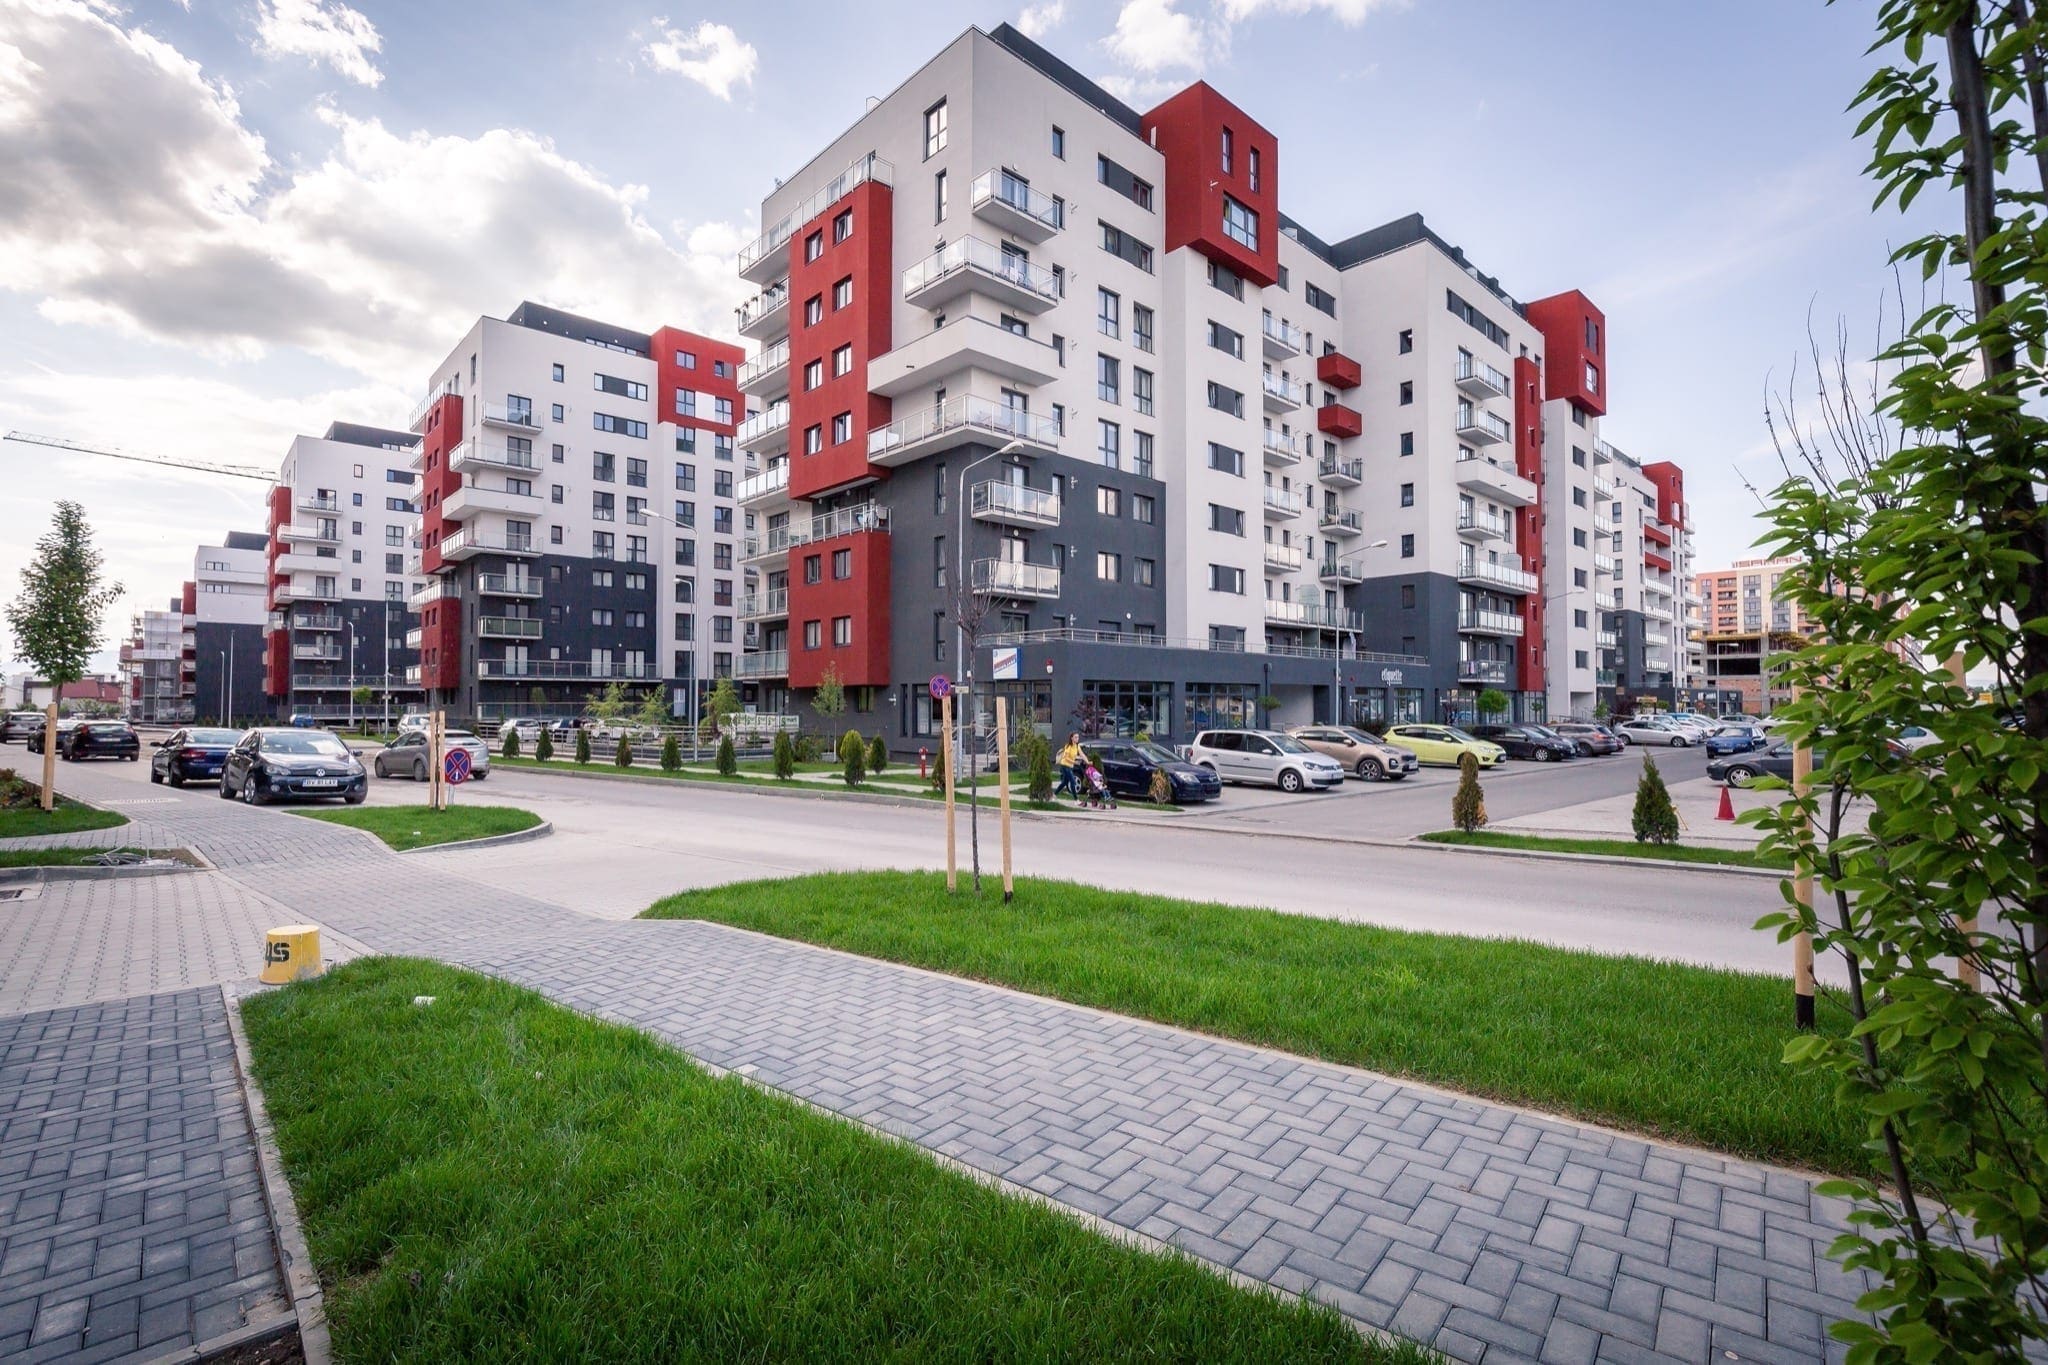 MRBv copy - Maurer Imobiliare a depășit pragul de 9000 de apartamente vândute în cadrul proiectelor imobiliare din țară